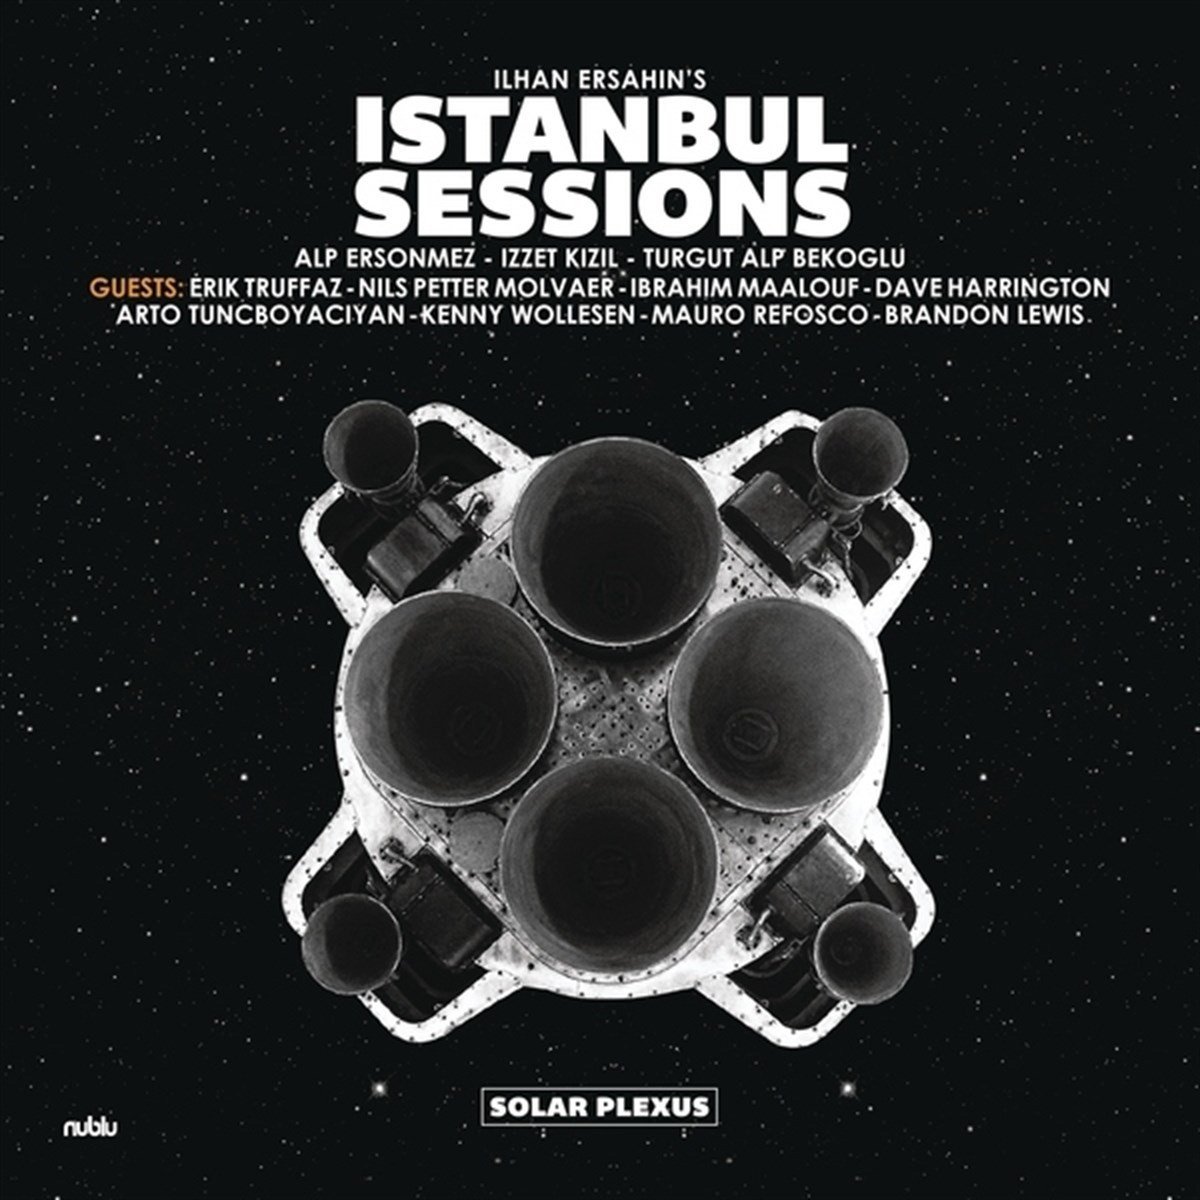 İLHAN ERŞAHİN ISTANBUL SESSIONS - SOLAR PLEXUS (2018) - CD SIFIR